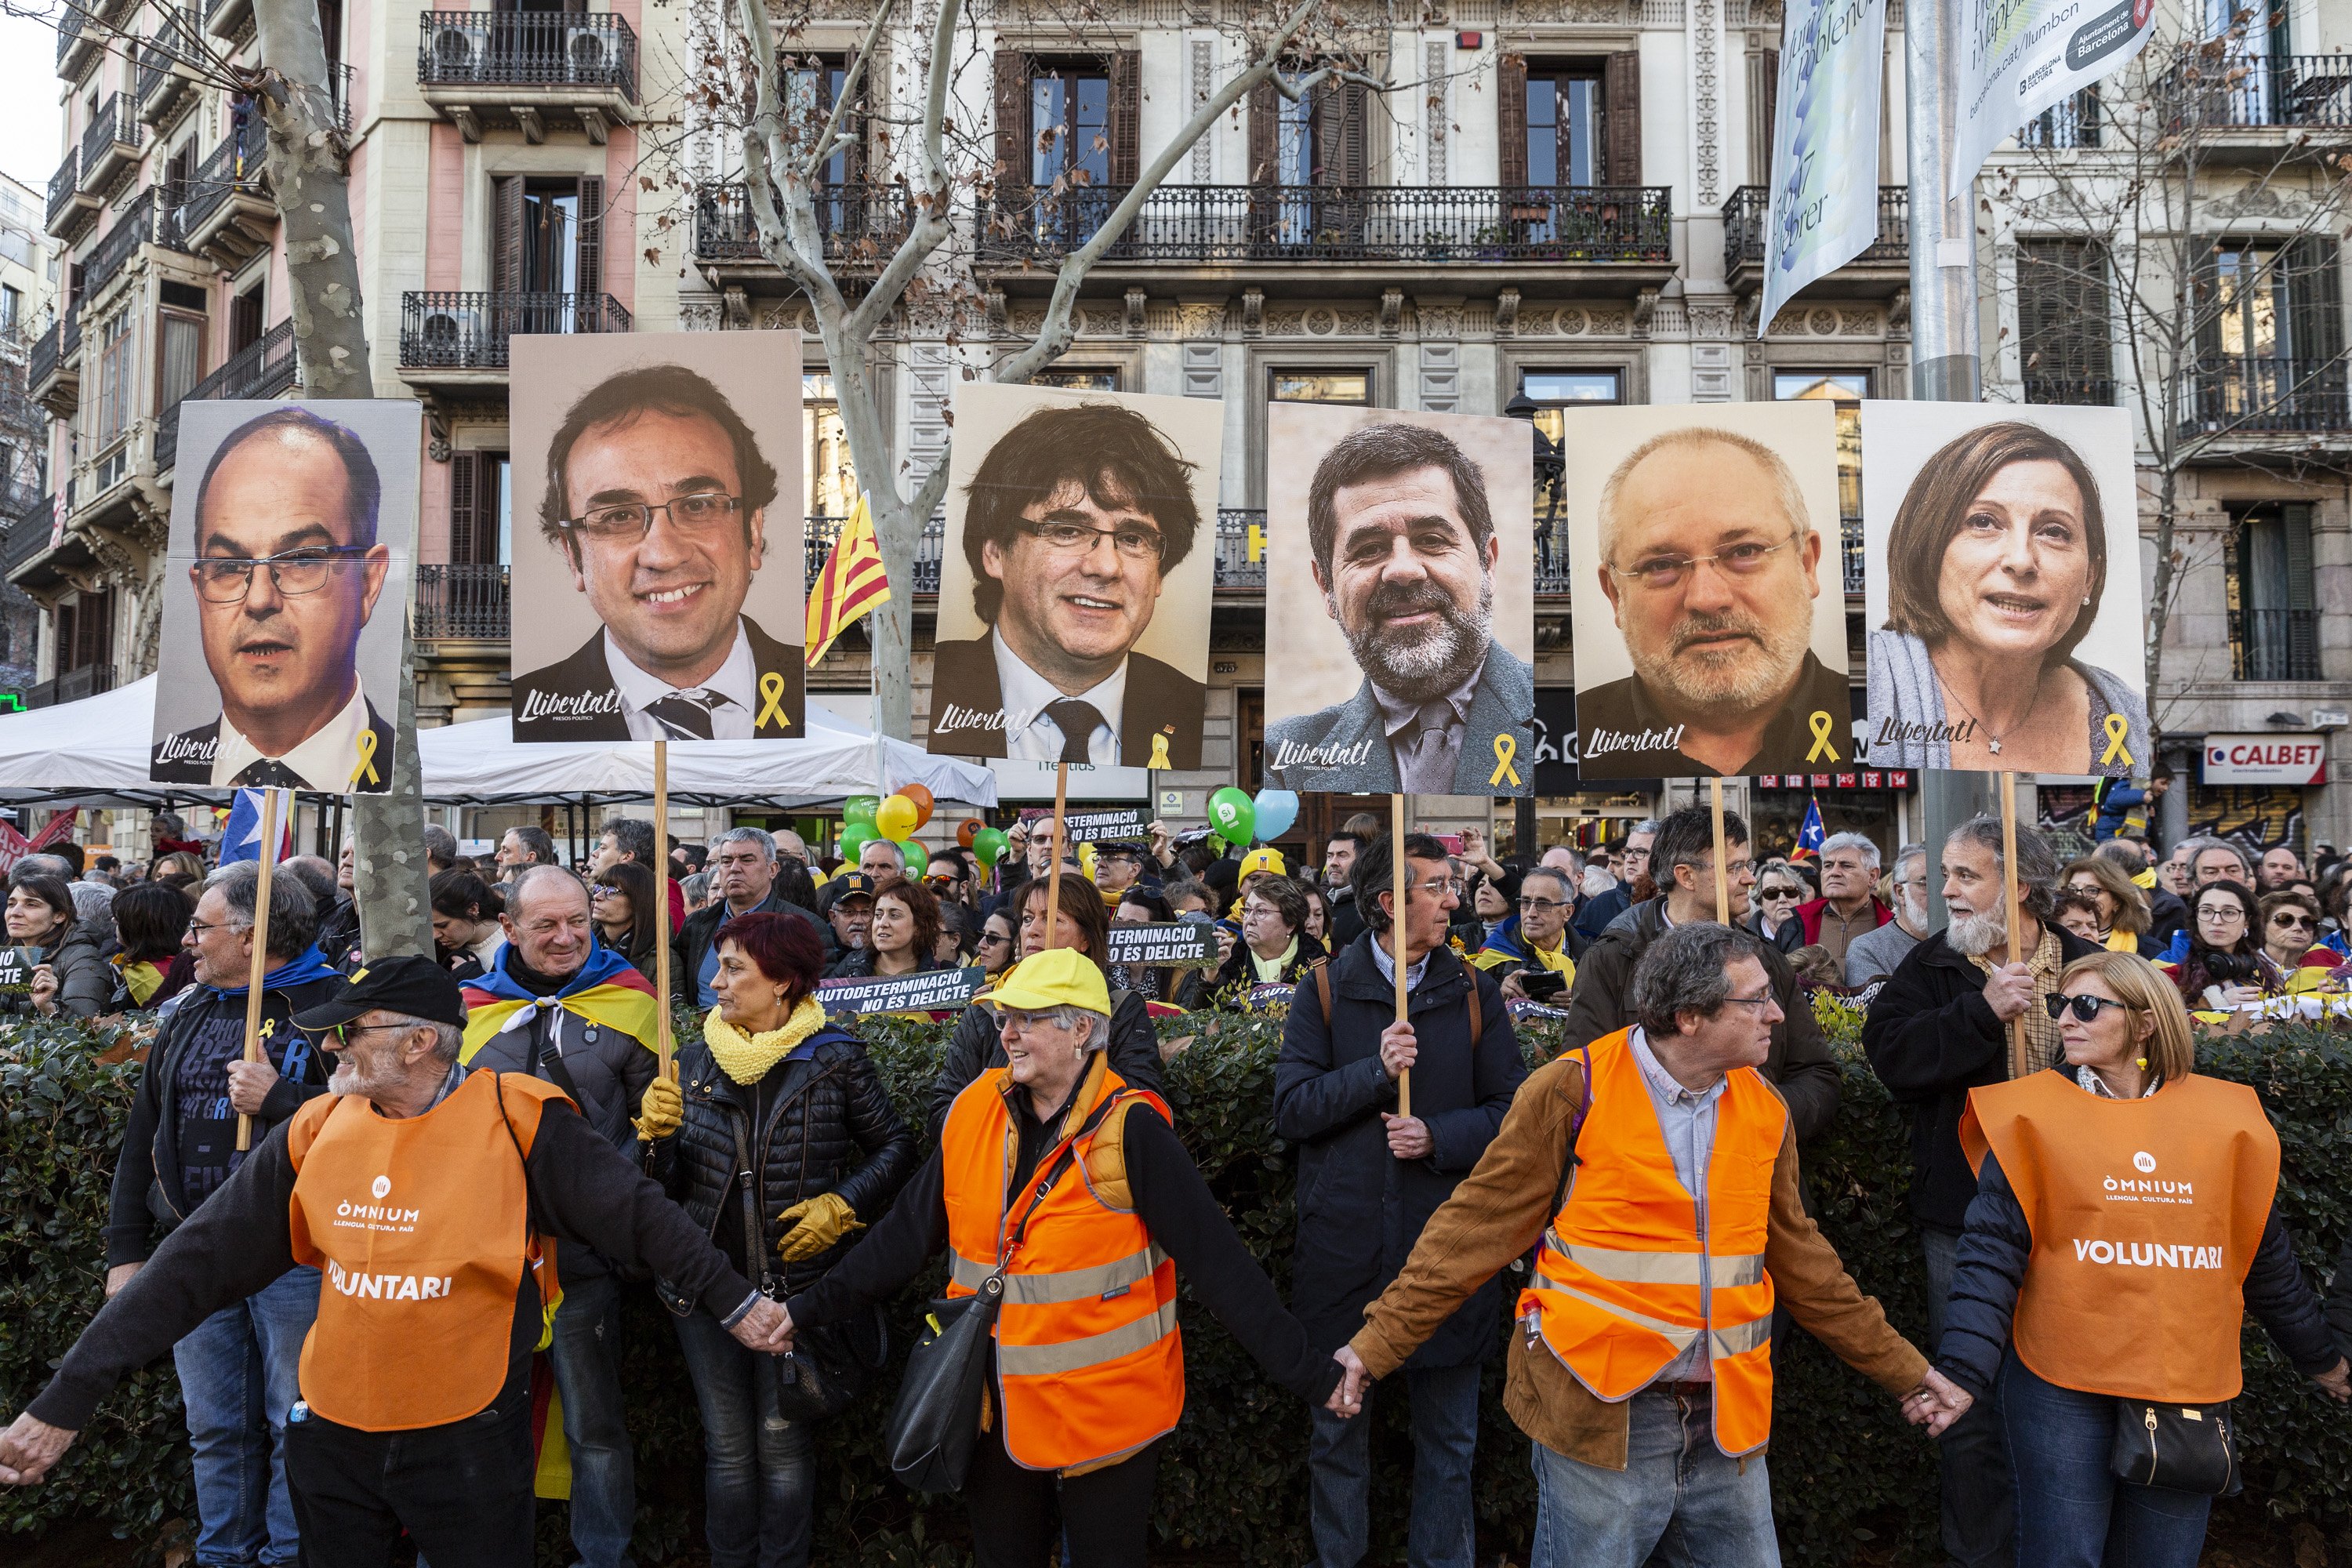 Hi ha presos polítics a Espanya? Aquesta és la resposta segons Google